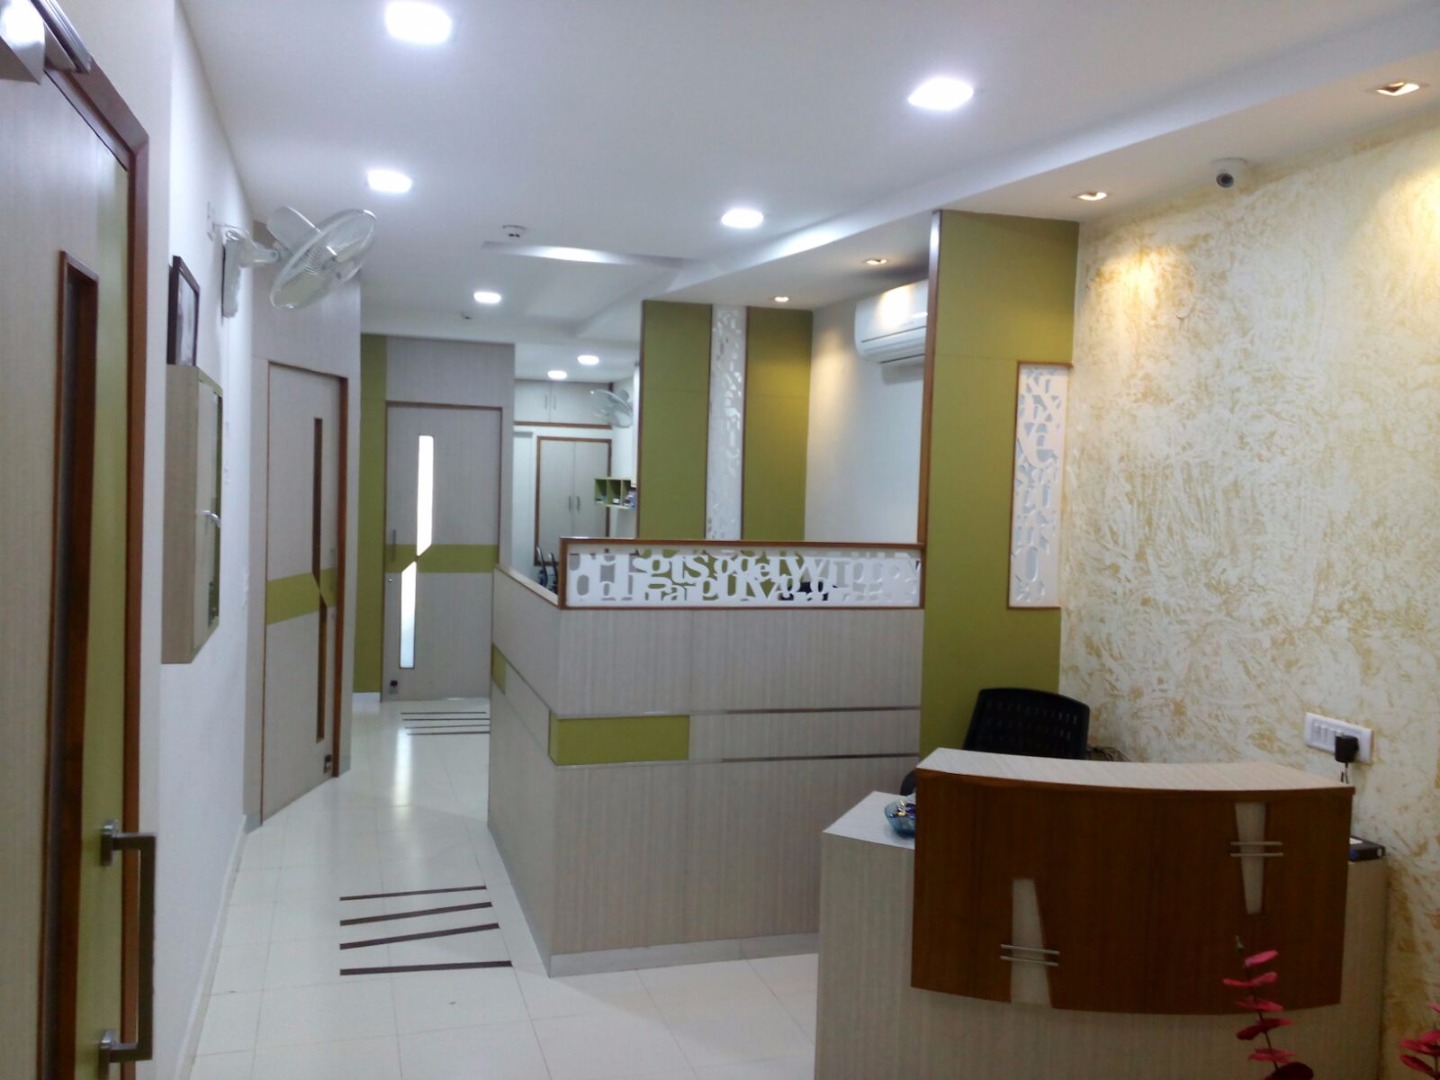 Institute interior designer in burdwa